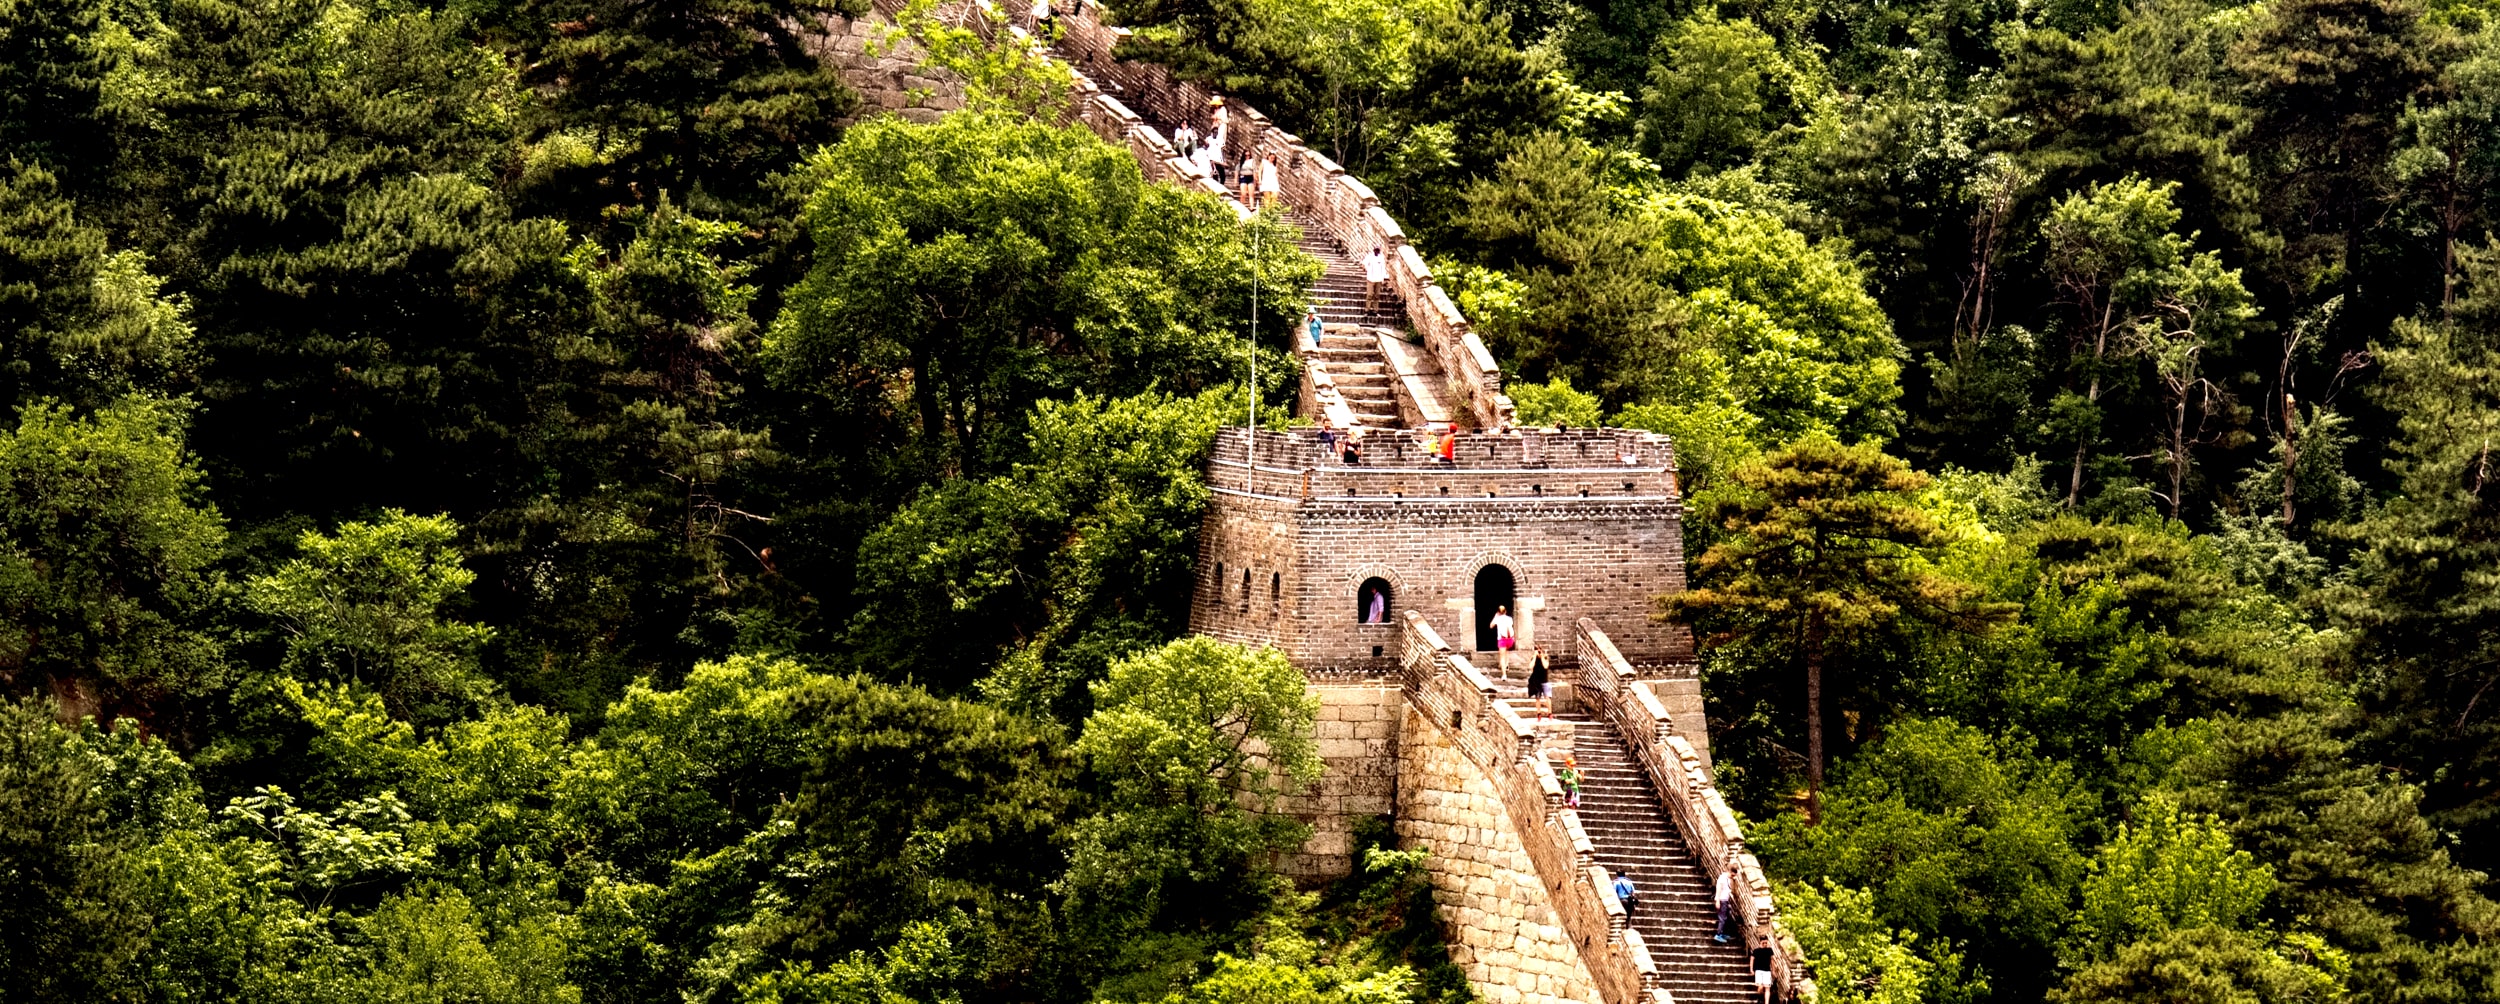 La sección de la Gran Muralla de China Mutianyu se encuentra en un lugar boscoso con riachuelos